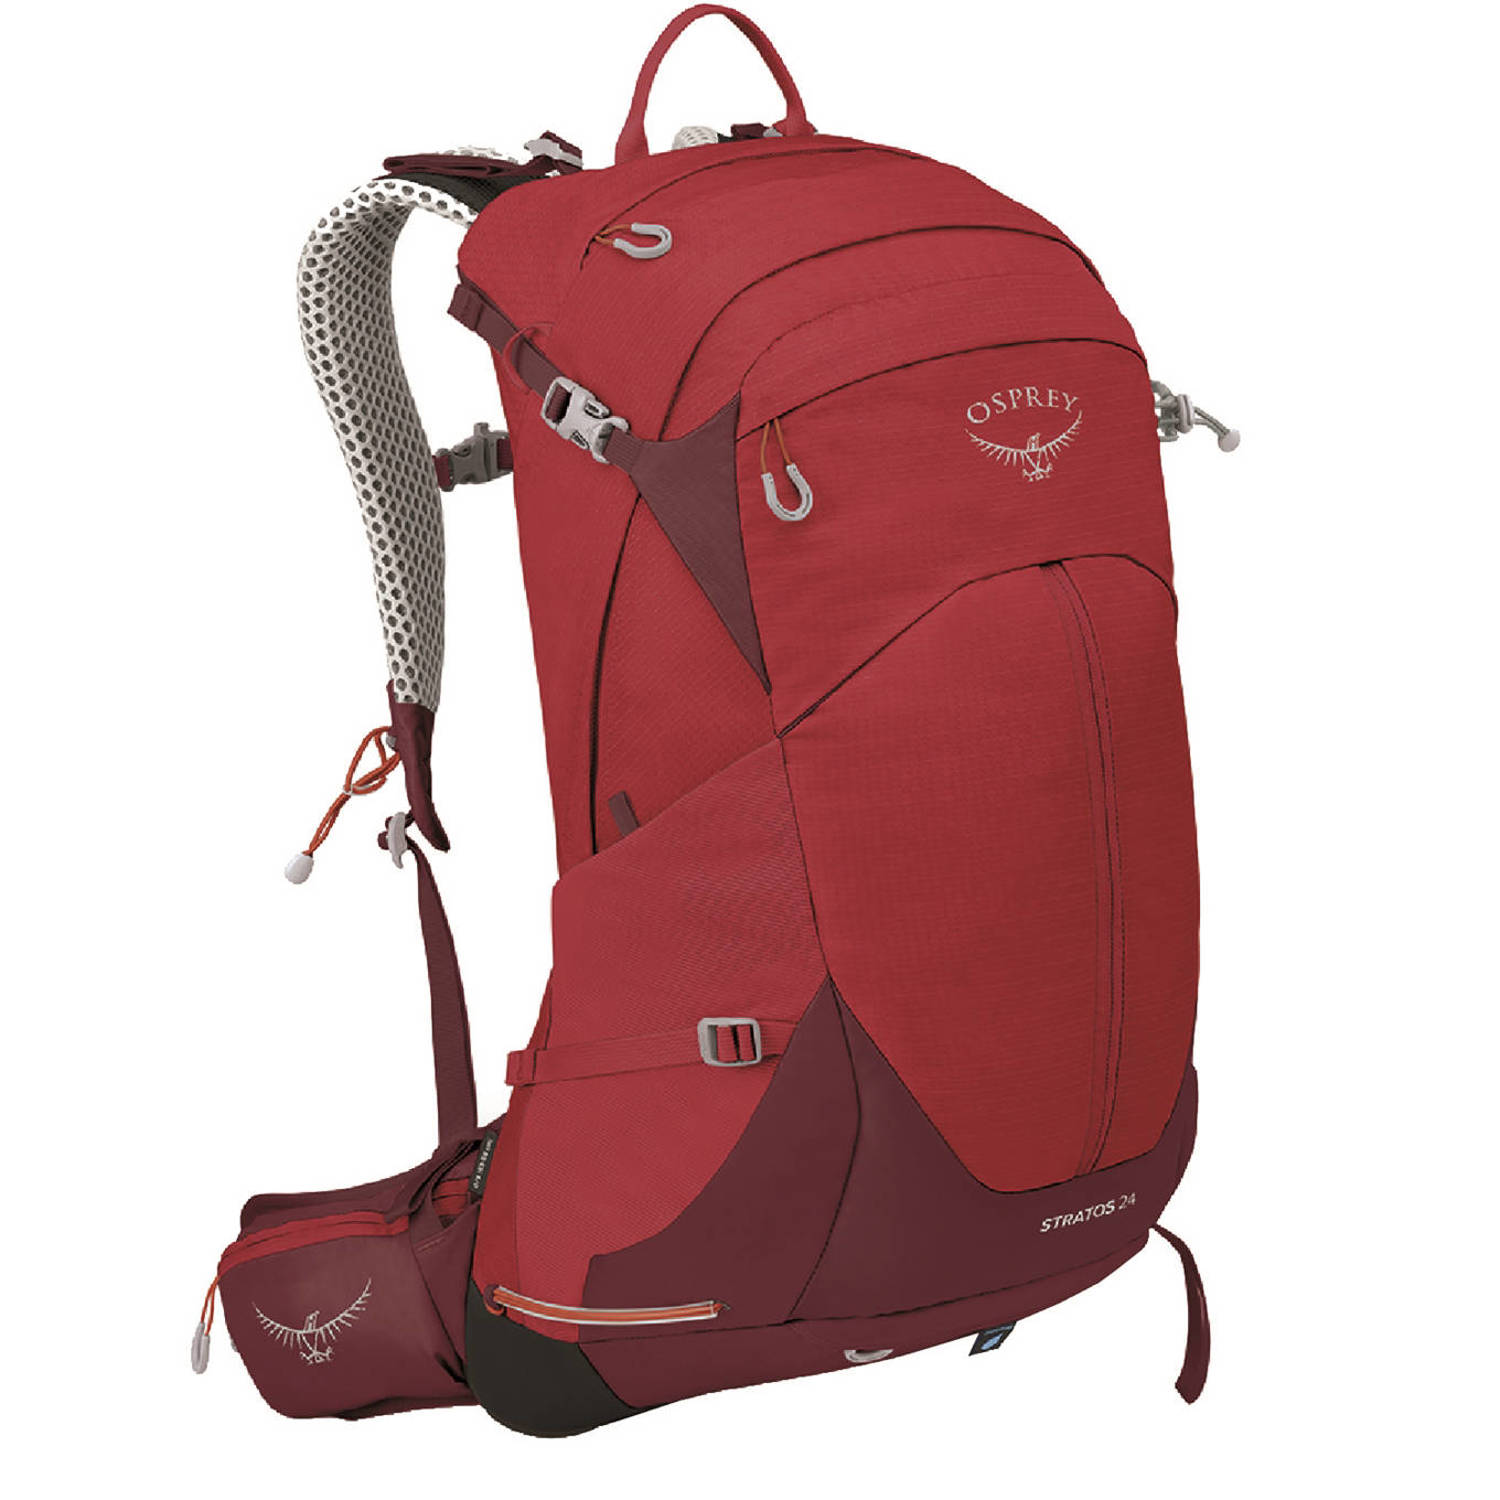 Osprey backpack Stratos 24L rood